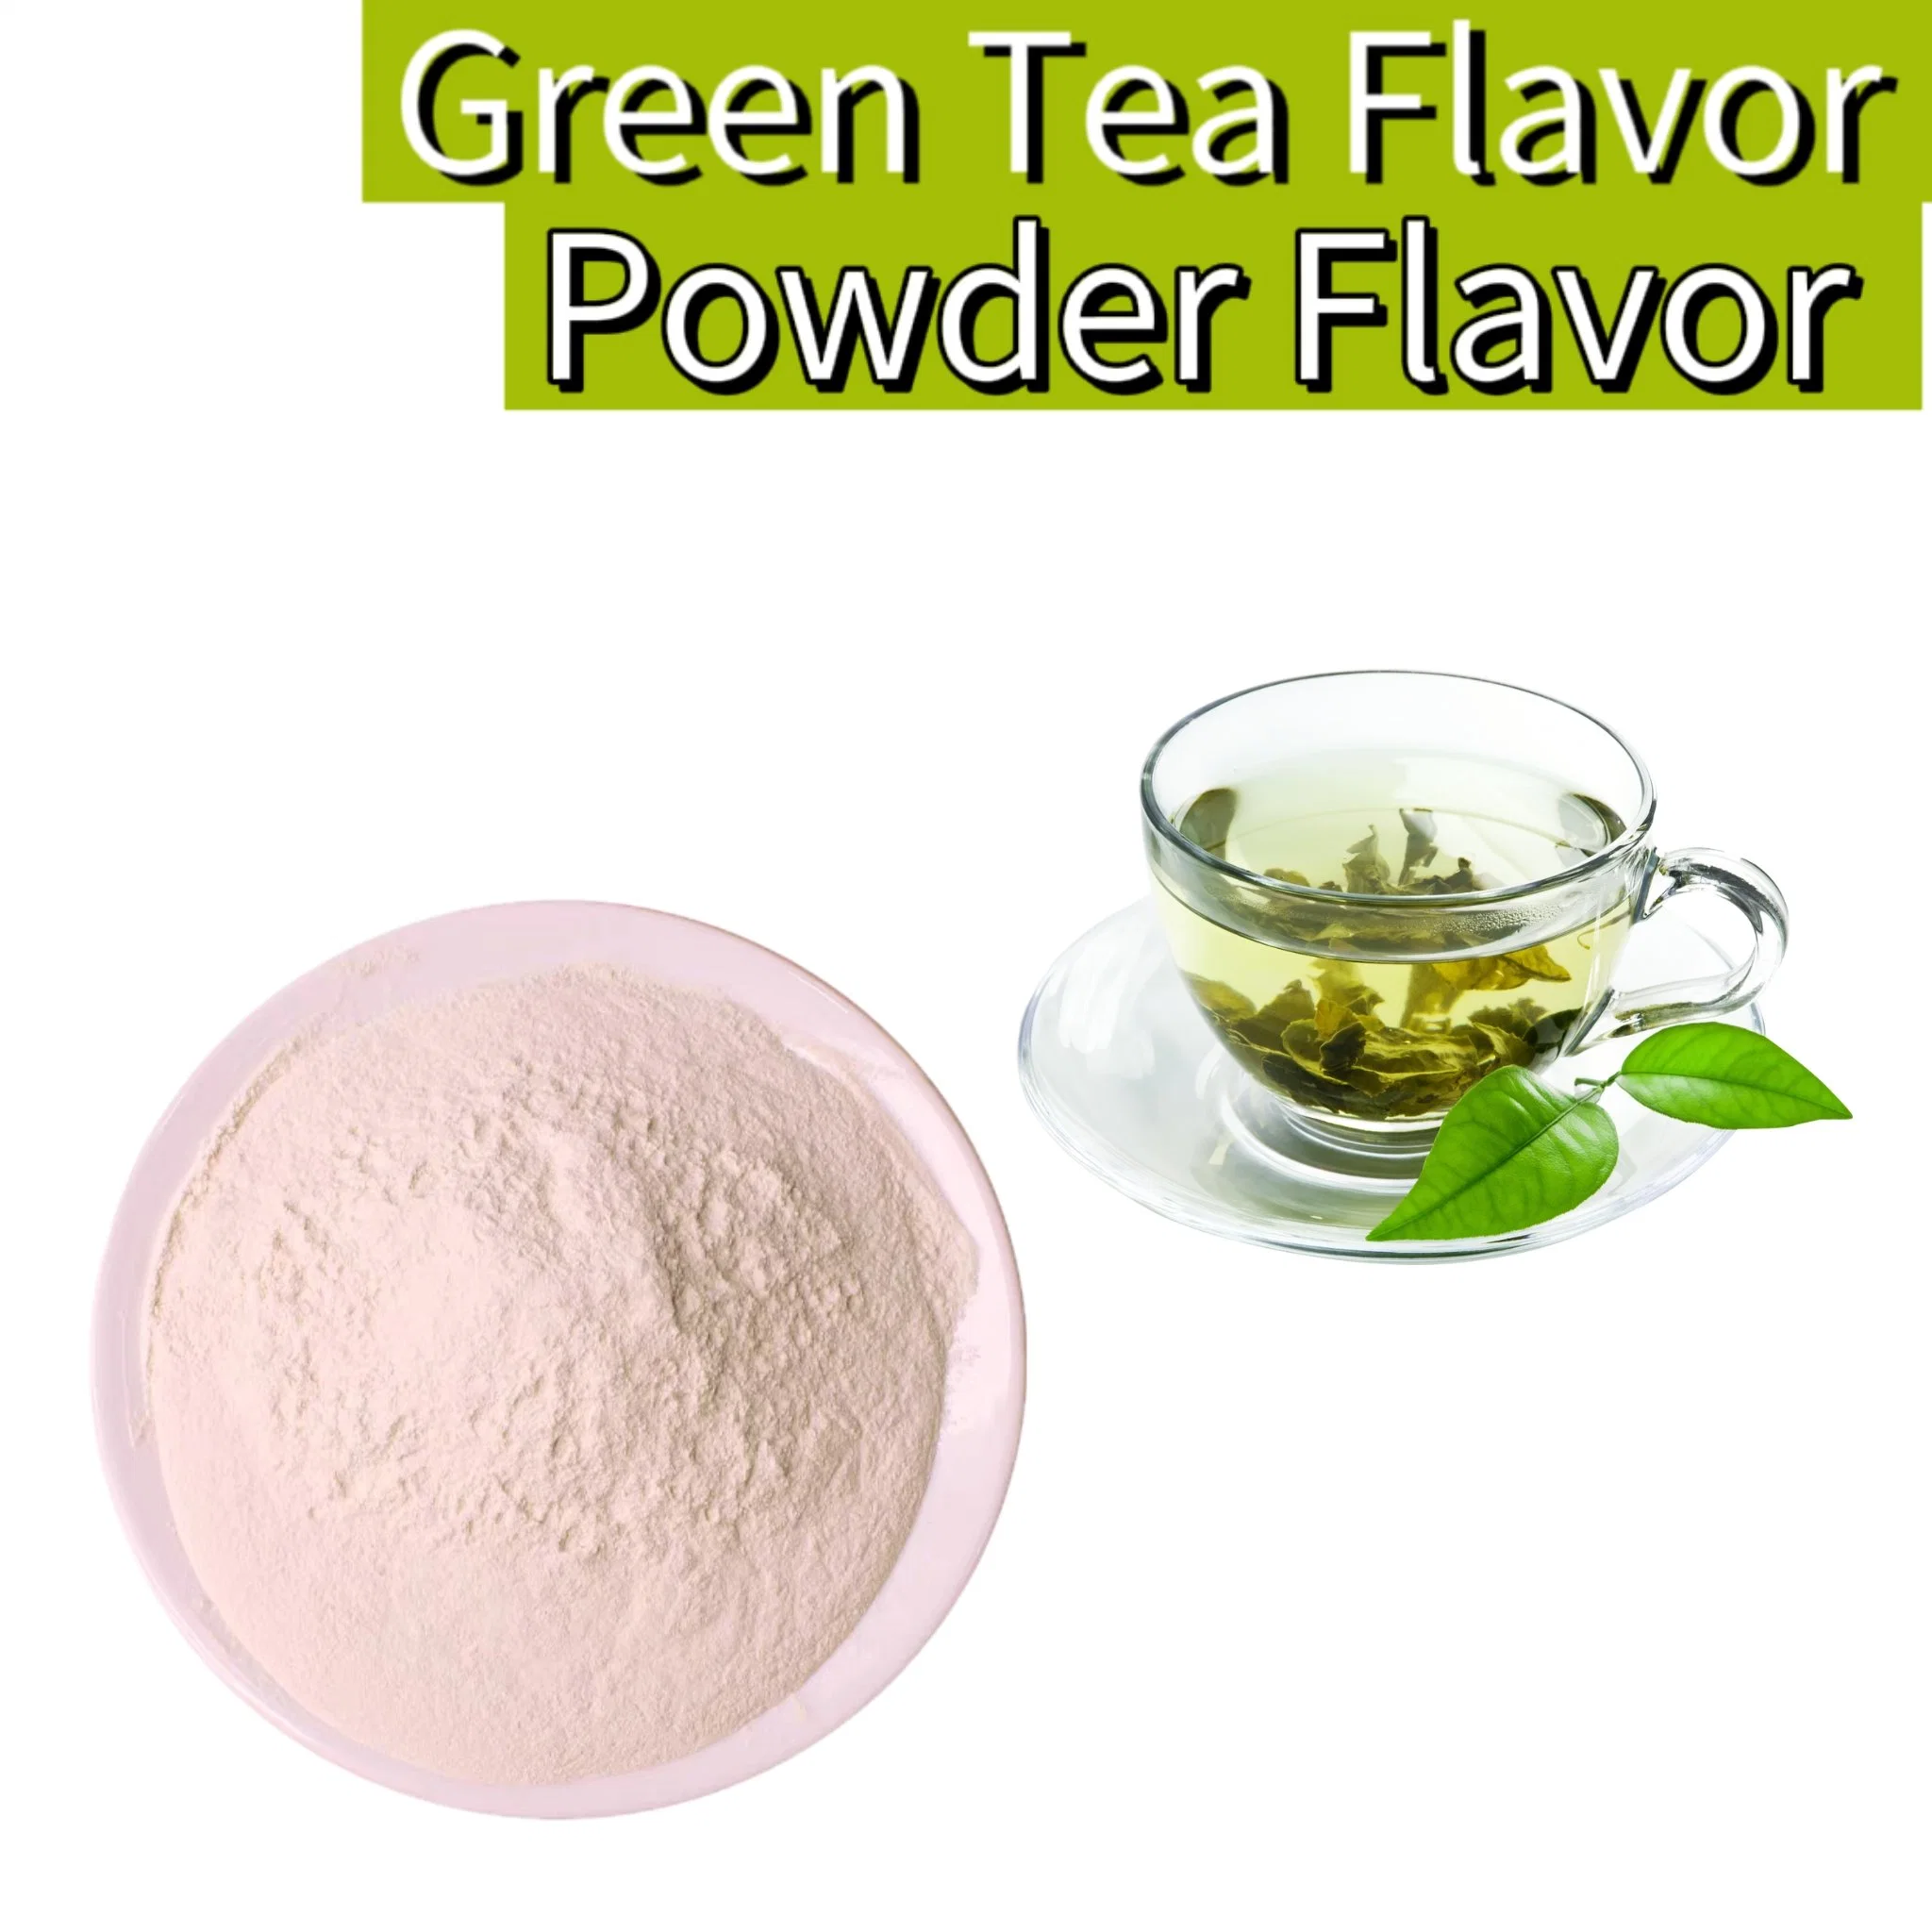 Green Tea Food Flavor Powder, for Baking, Beverages